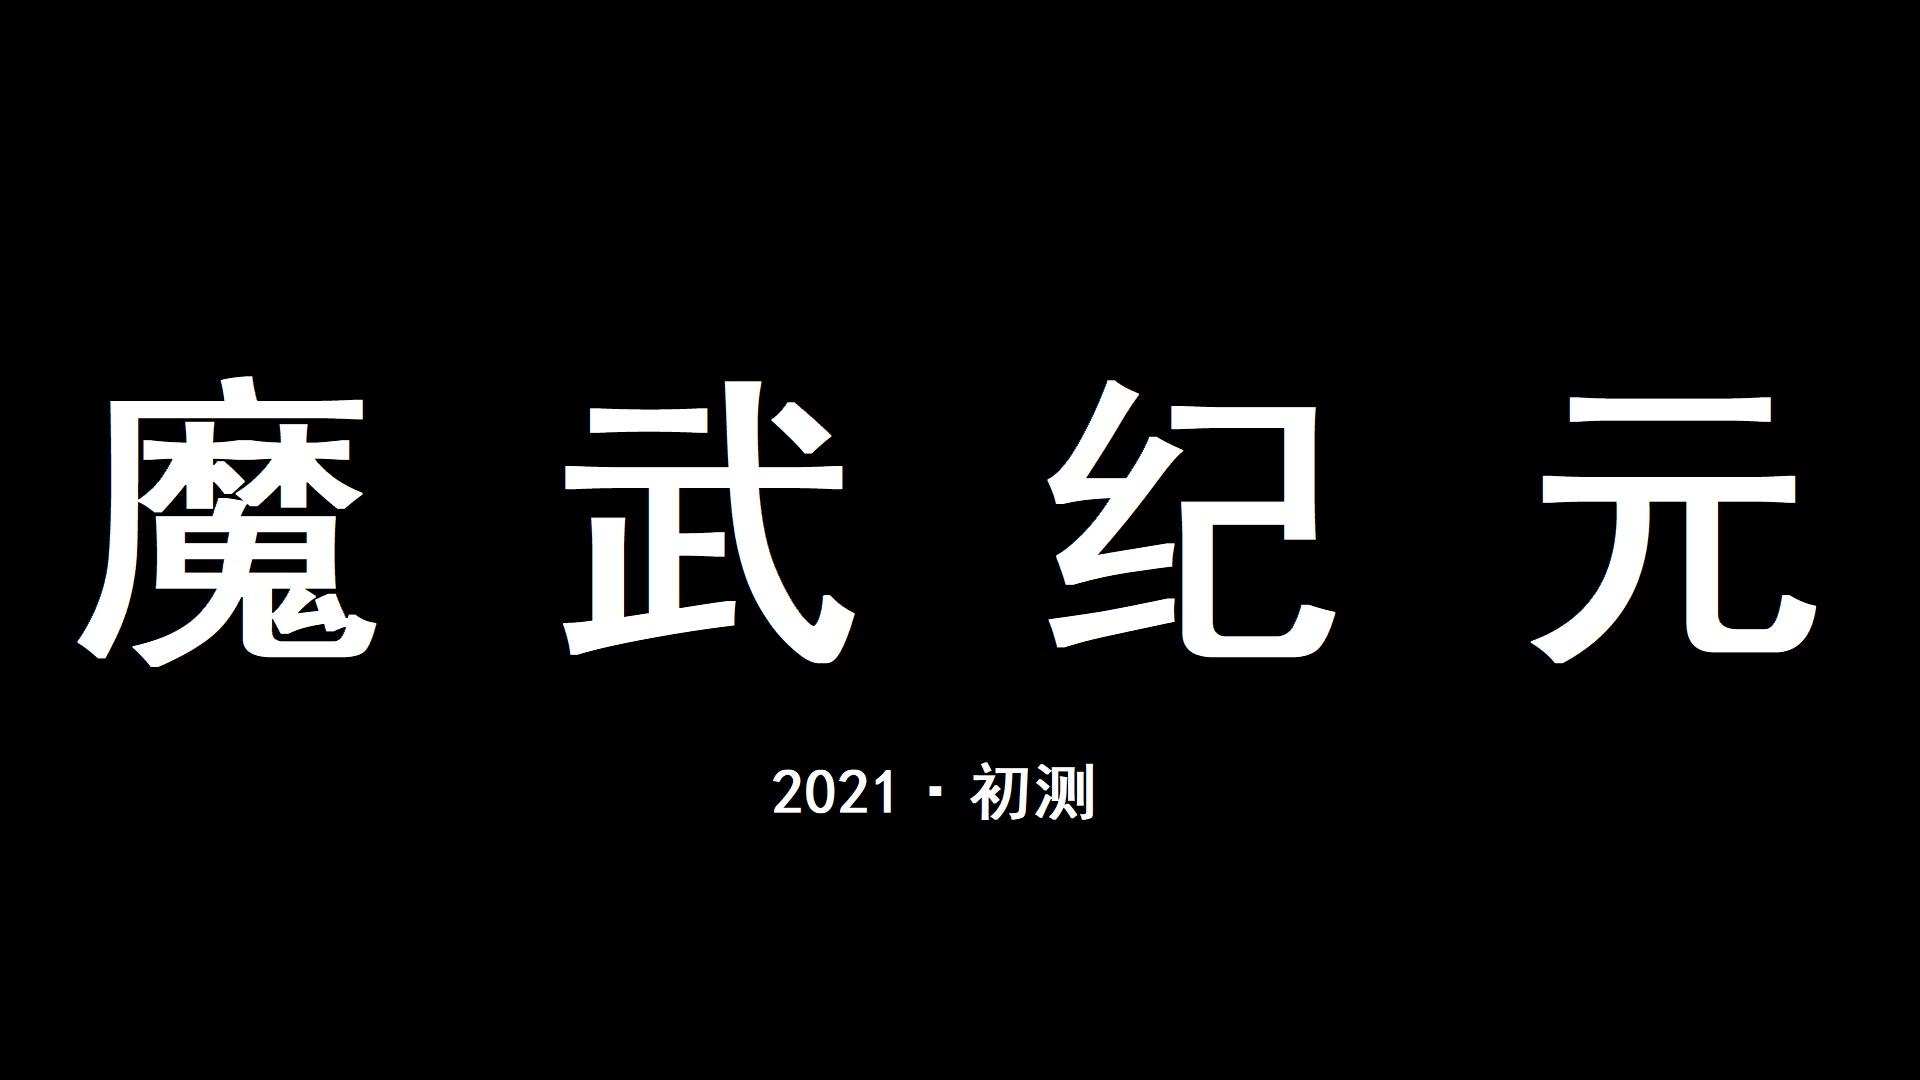 Banner of Mo Wu: ထာဝရ 23.9.20